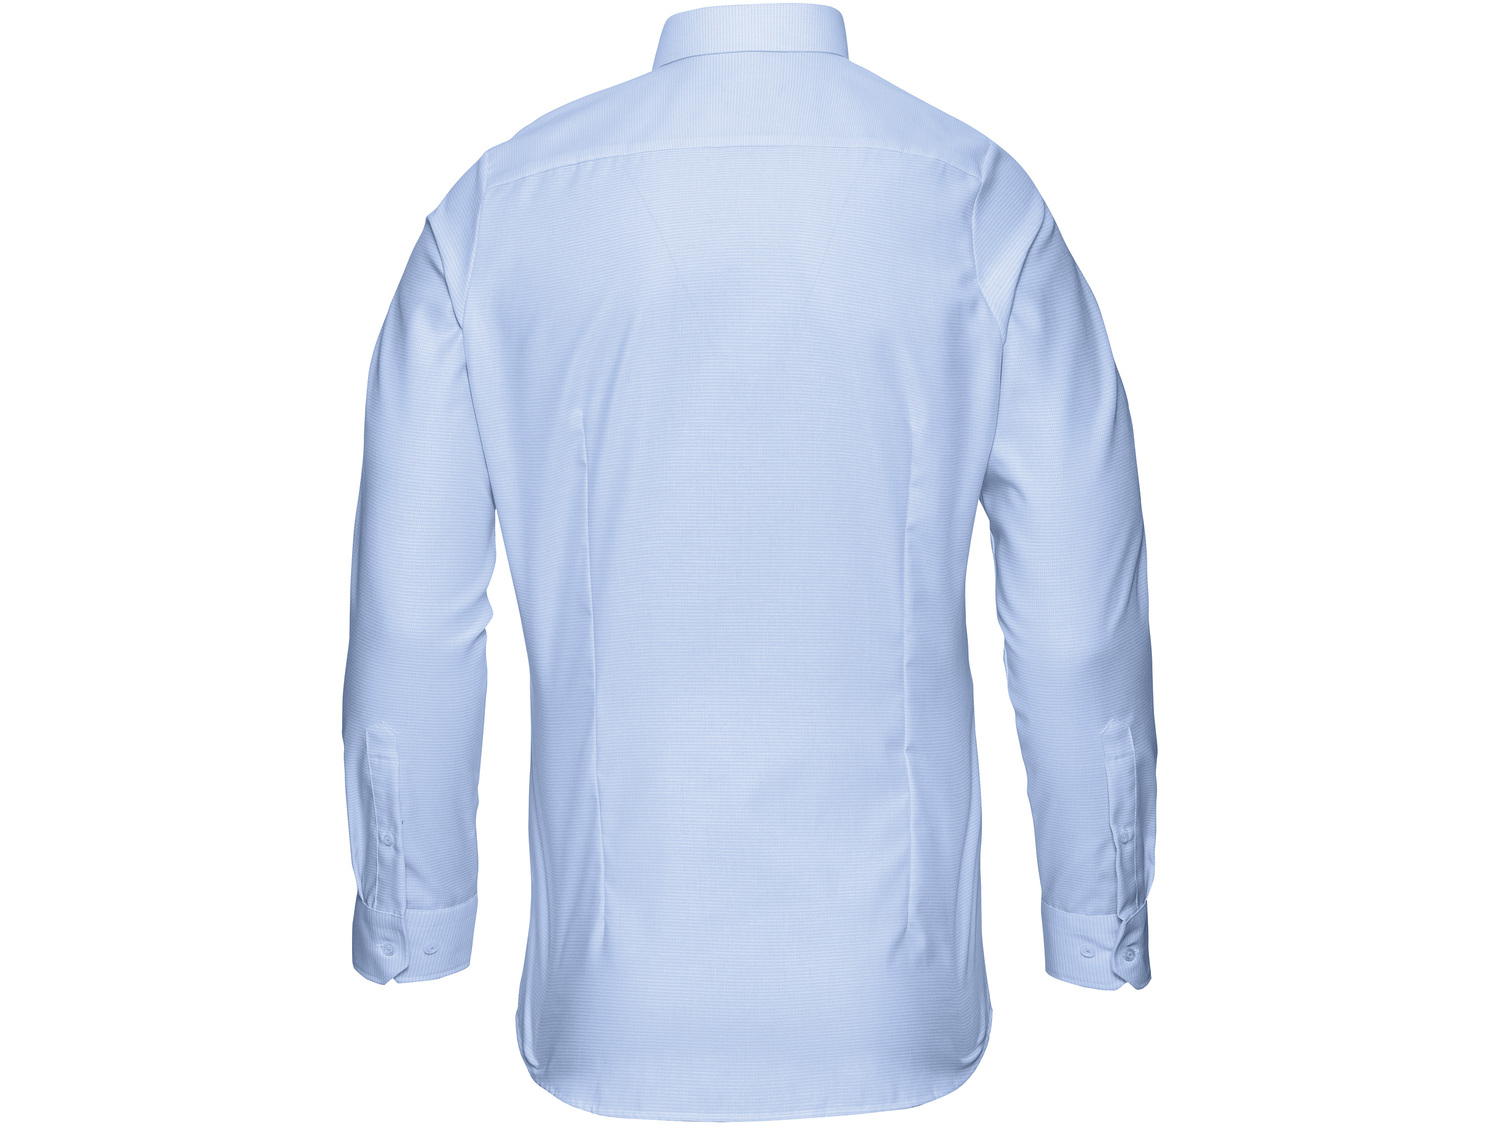 Koszula , cena 49,99 PLN 
- 100% bawełny
- kołnierz typu Kent
- taliowany kr&oacute;j
- ...